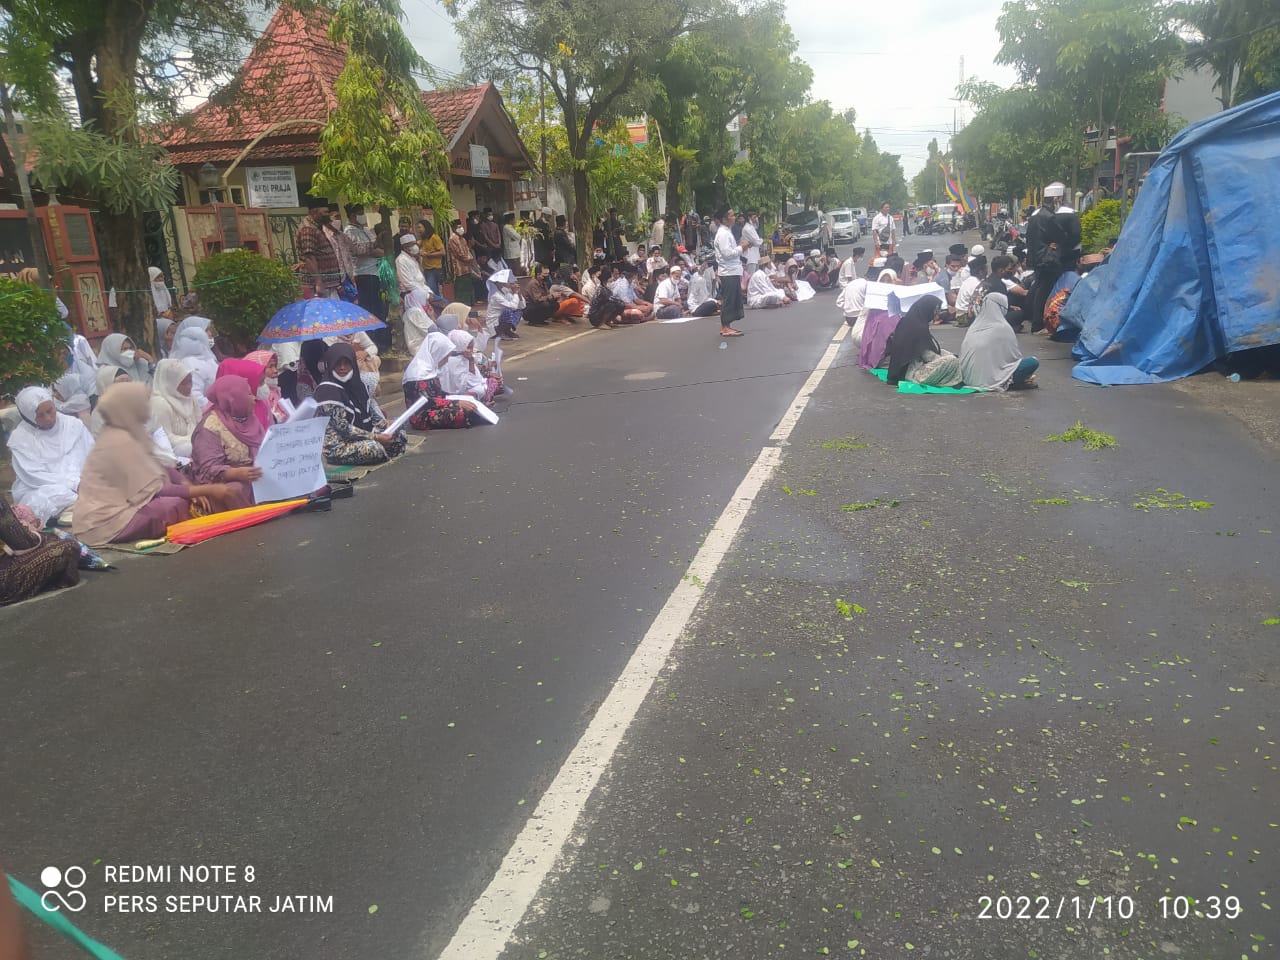 Foto: massa yang tergabung dalam Aliansi Rakyat Menggugat sedang meruqyah Pemkab sumenep